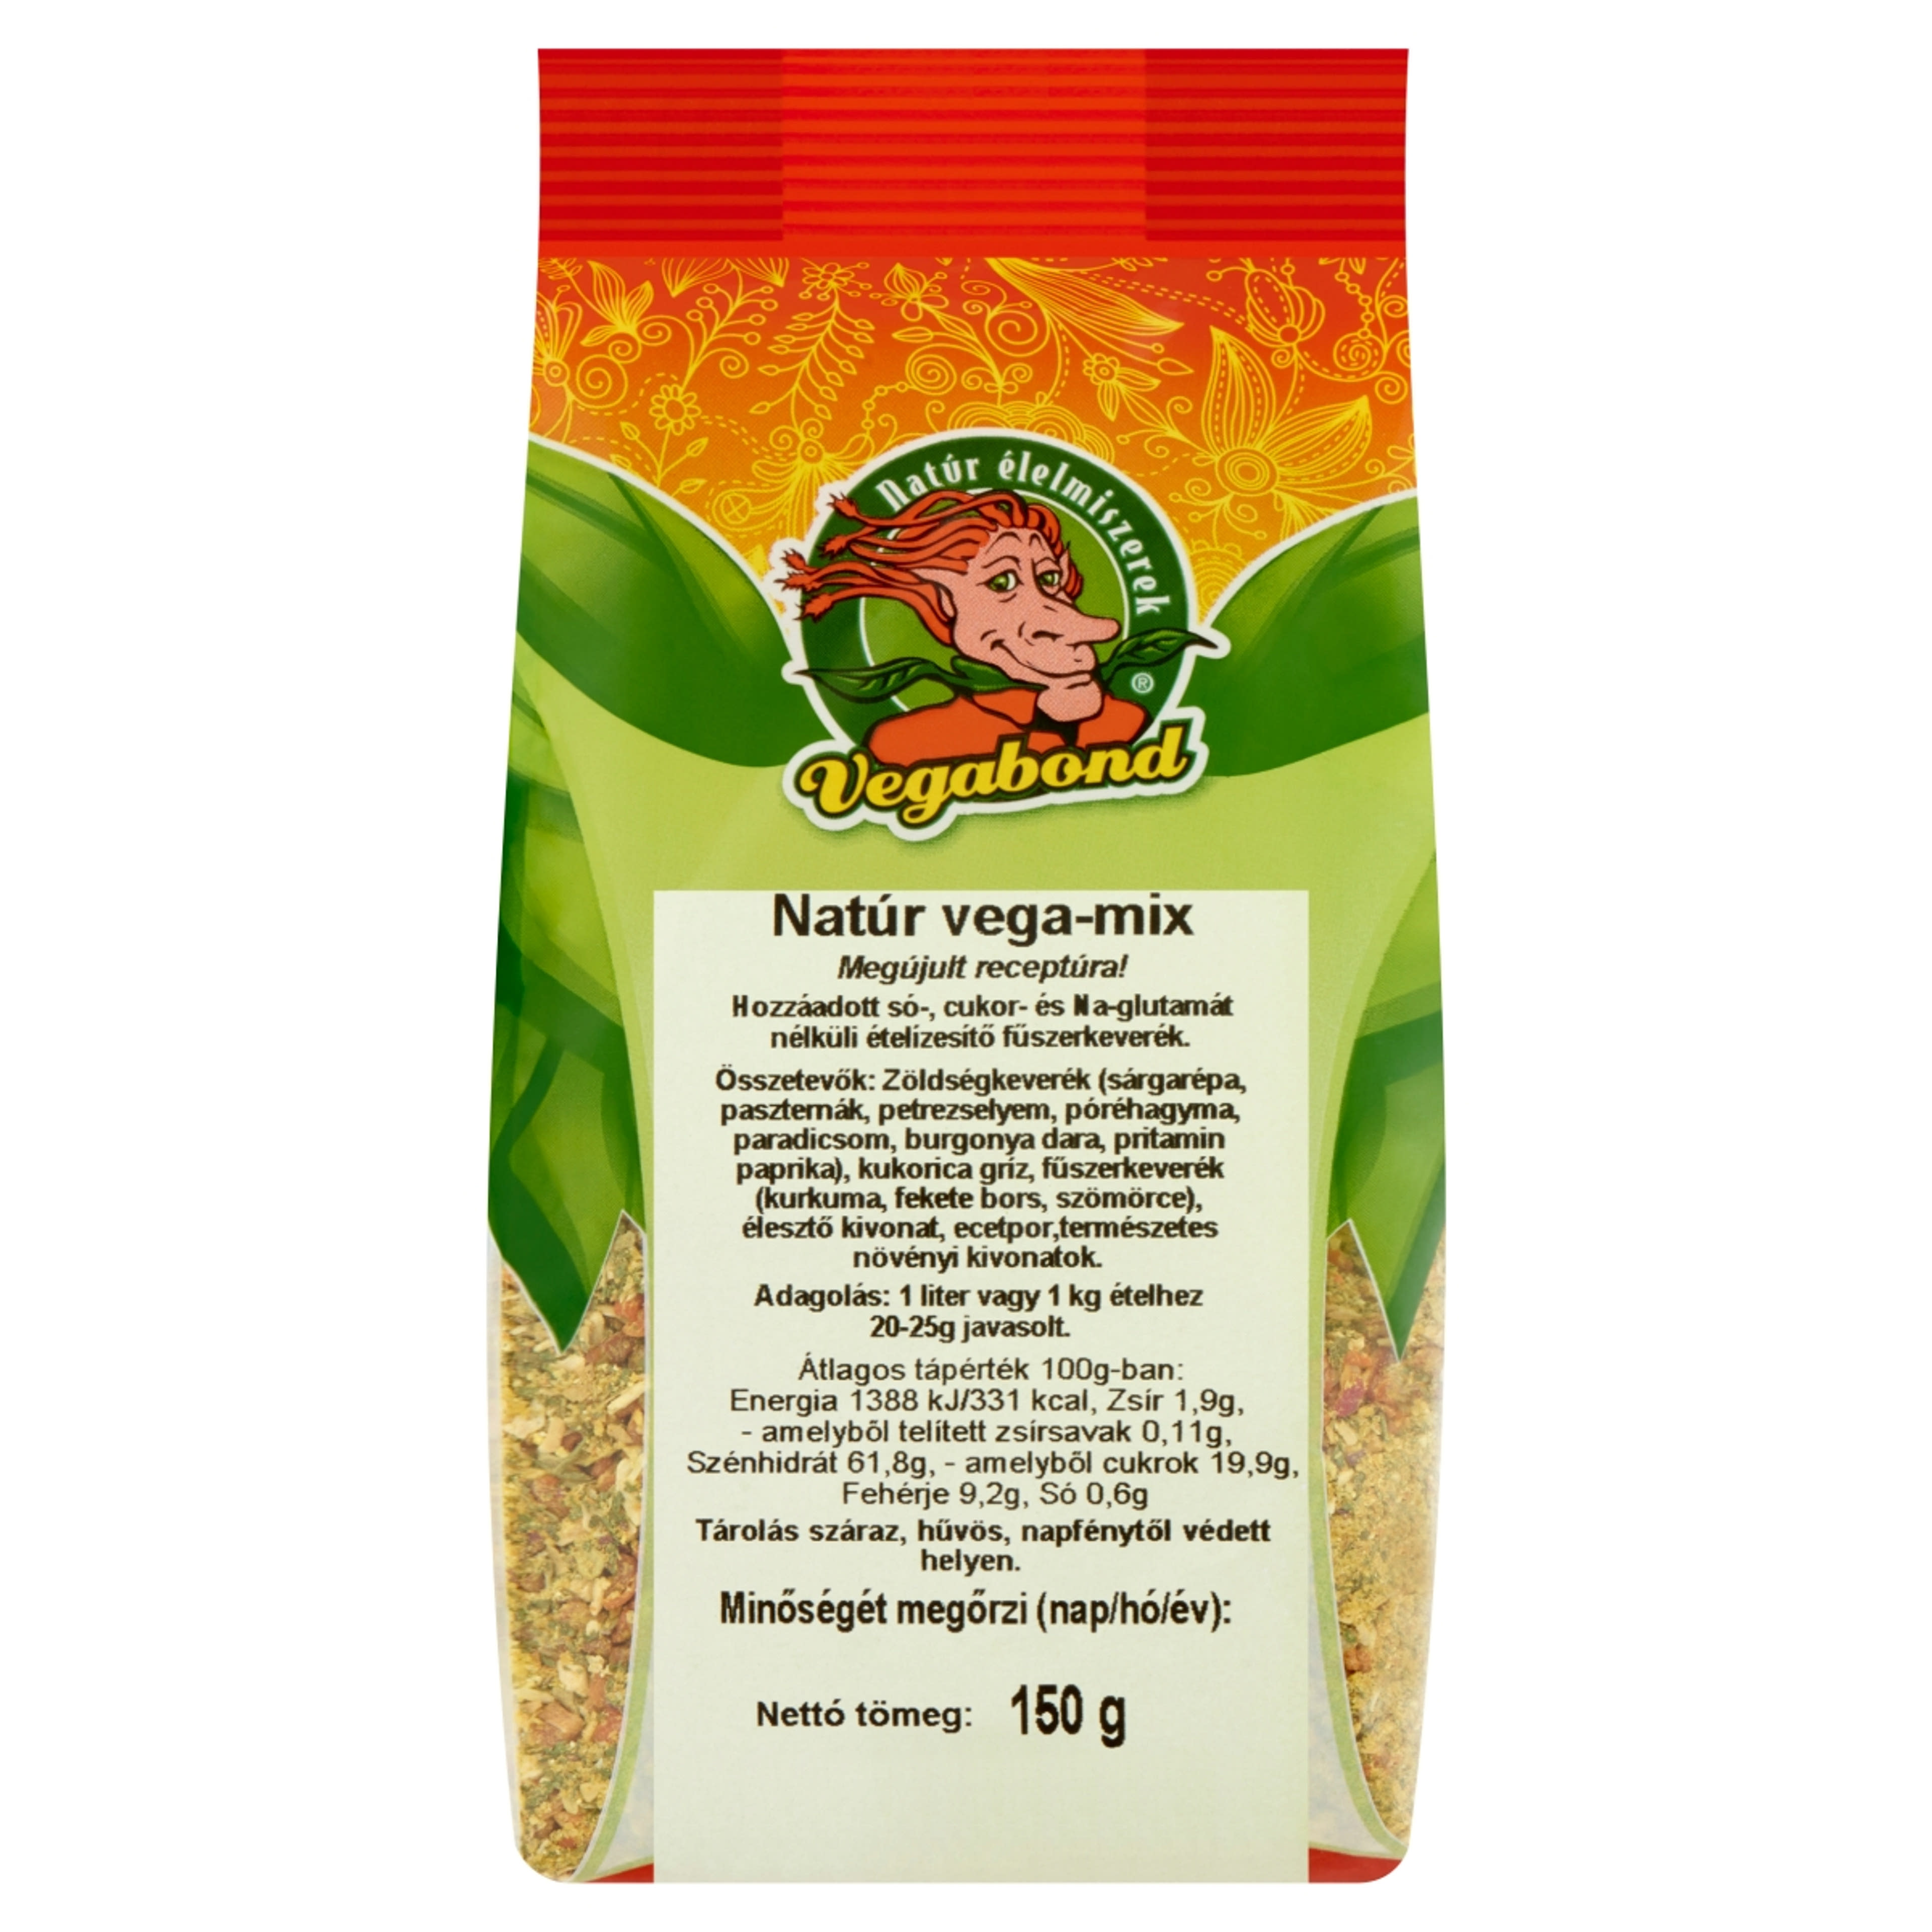 Vegabond natur vega mix ételízesítő - 150 g-1